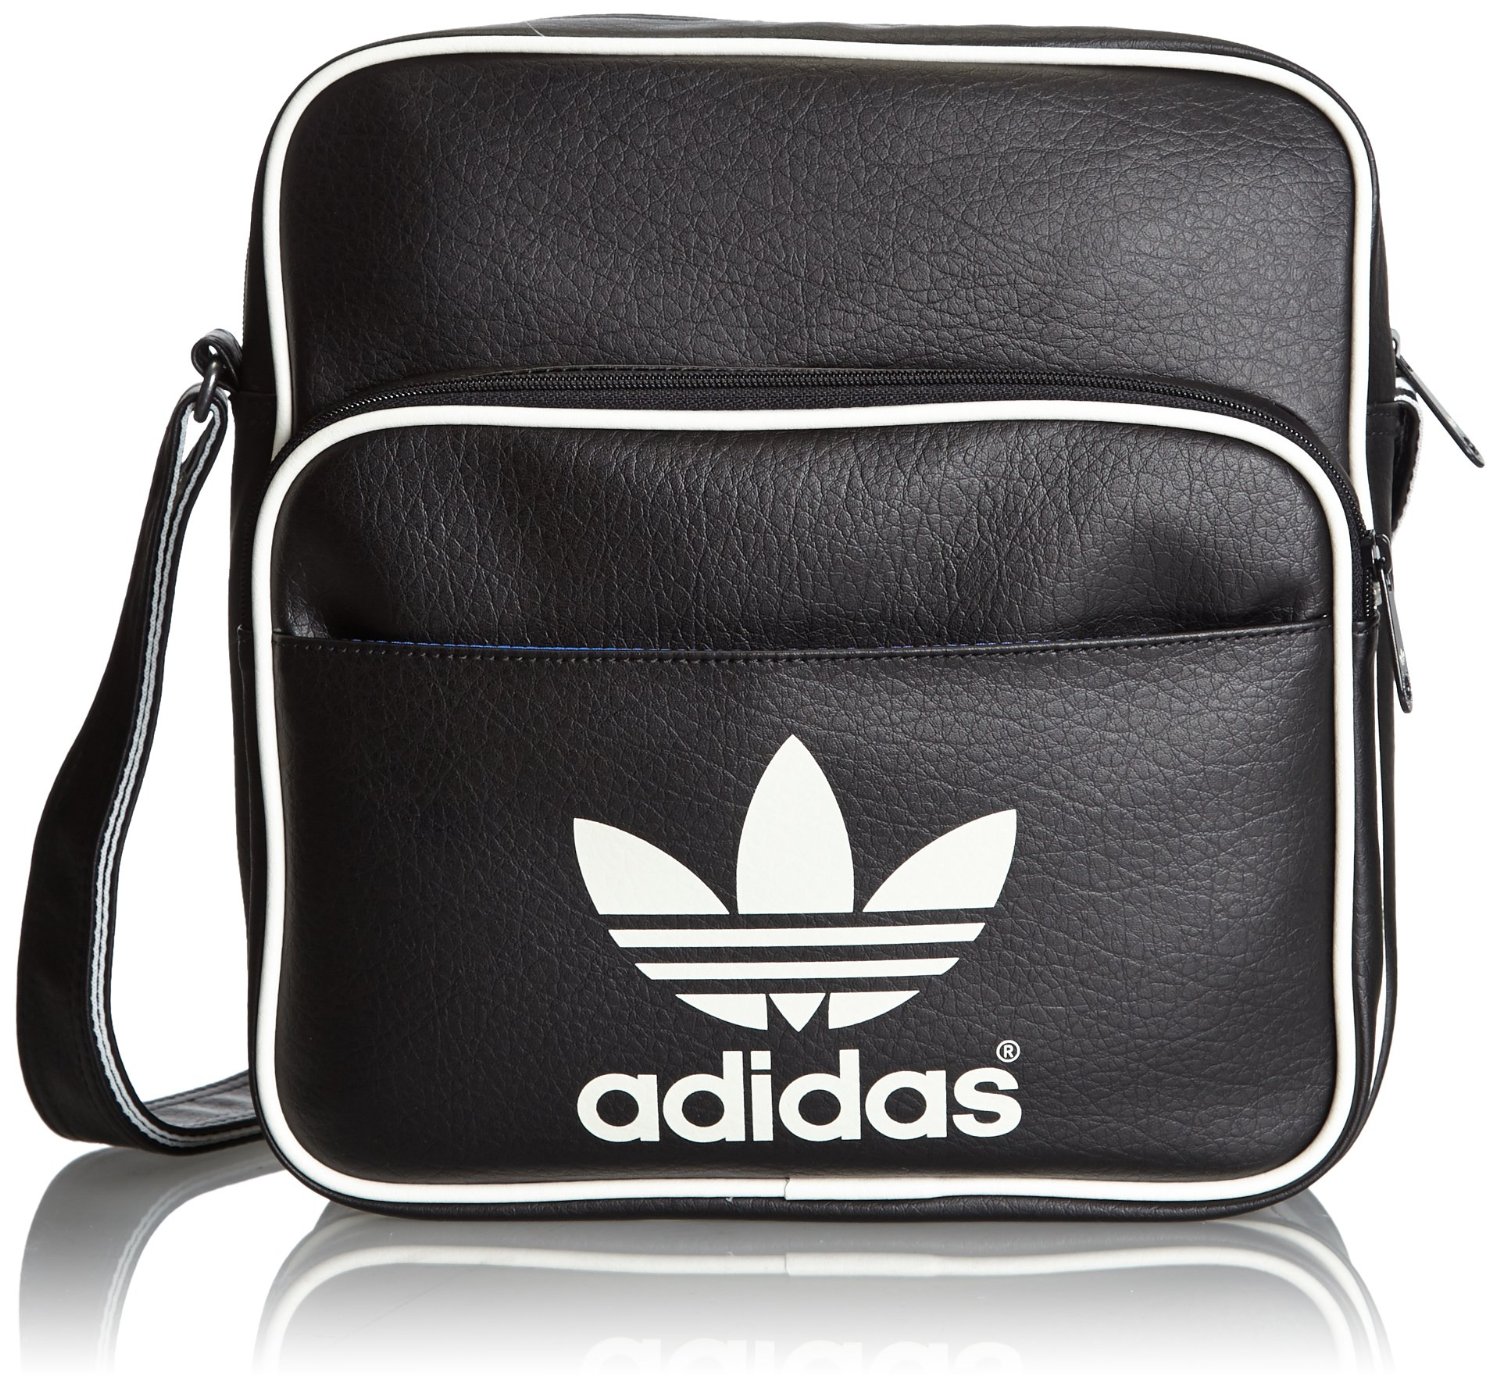 Adidas Umhängetasche Sir Bag in verschiedenen Farben ab 11,45 Euro inkl. Prime-Versand